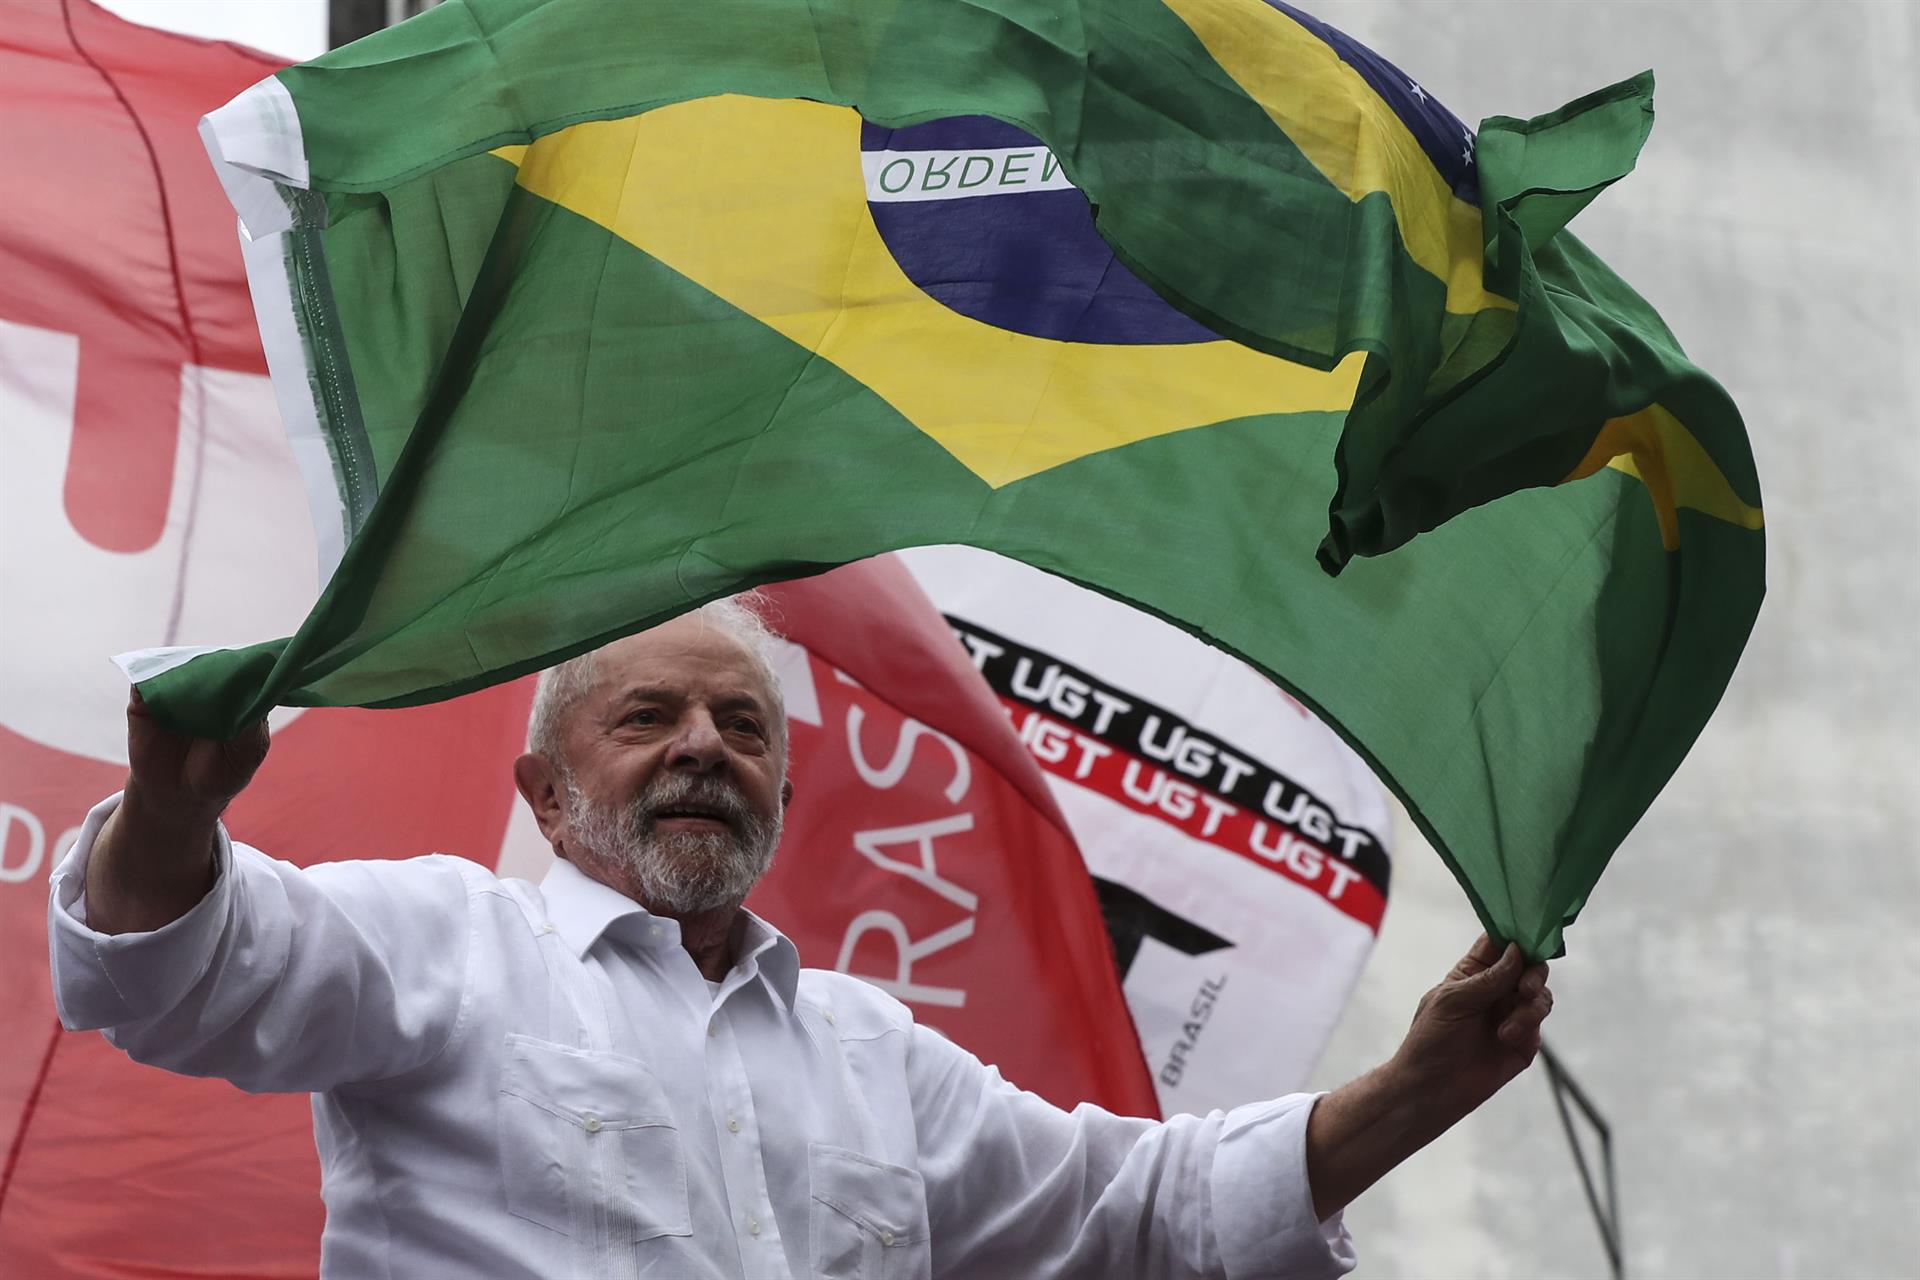 El expresidente de Brasil y actual candidato a la presidencia, Luiz Inácio Lula da Silva, en una fotografía de archivo. EFE/Sebastião Moreira